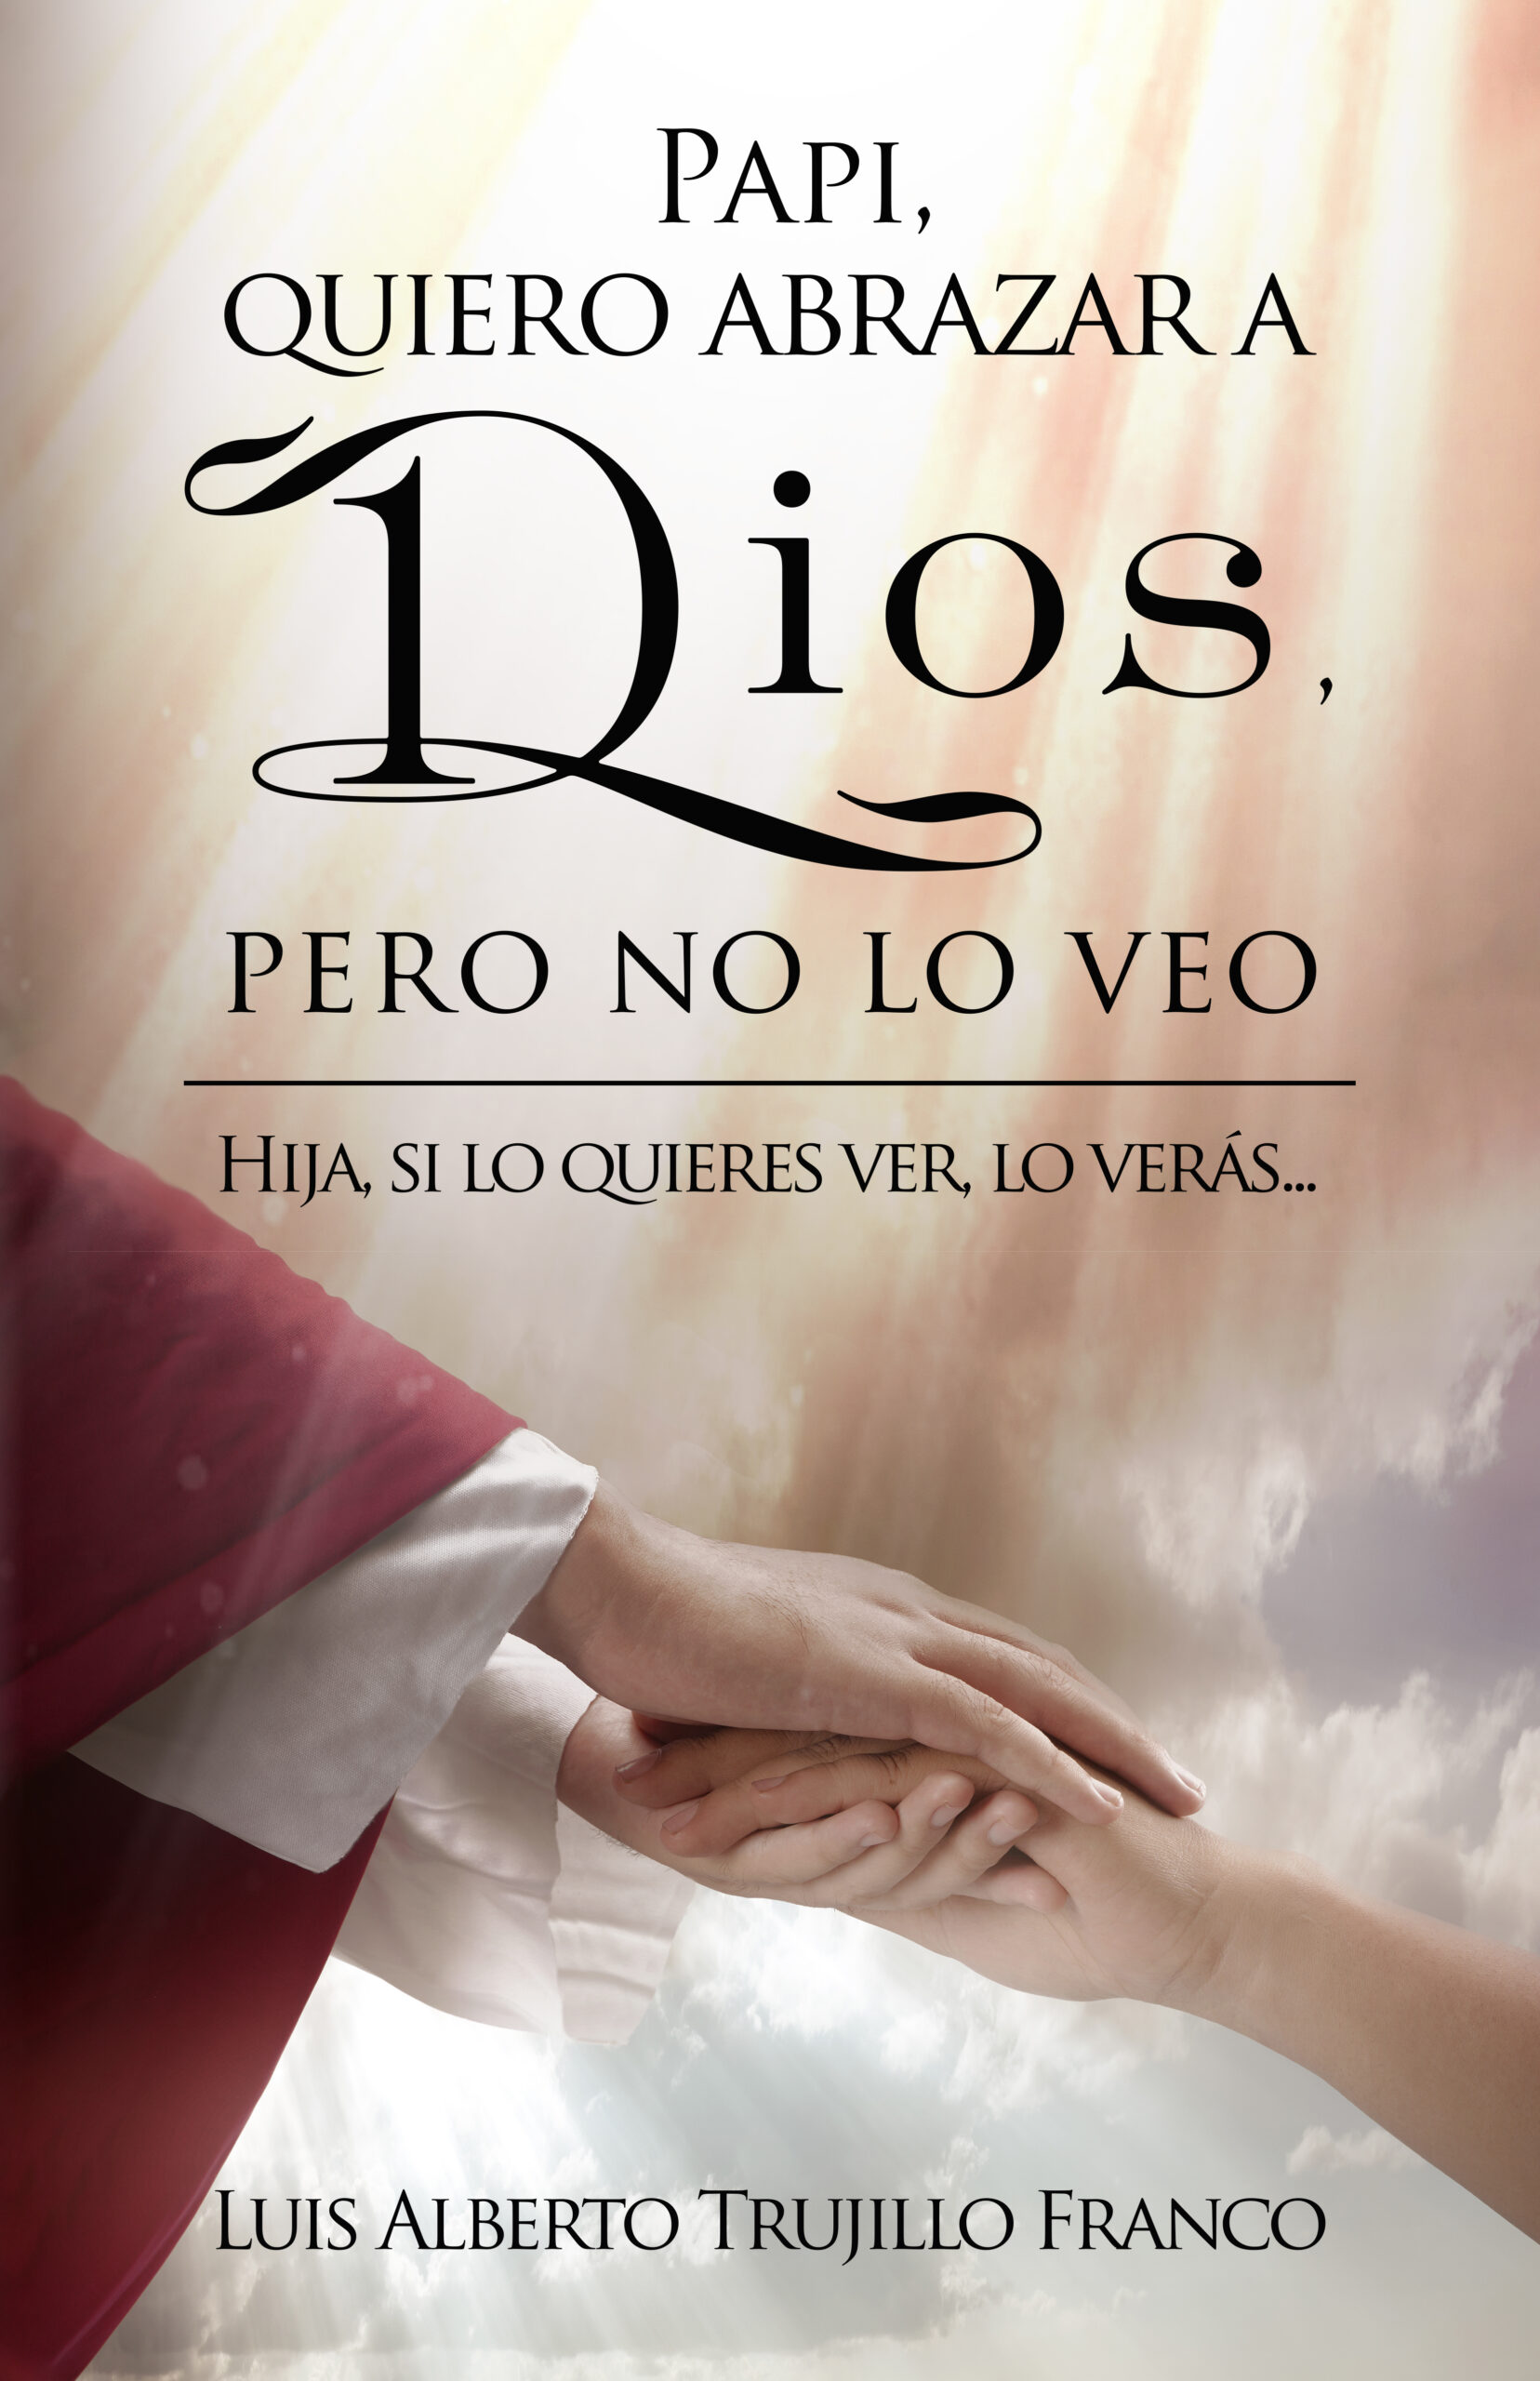 Papi, quiero abrazar a Dios, pero no lo veo, de Luis Alberto Trujillo Franco